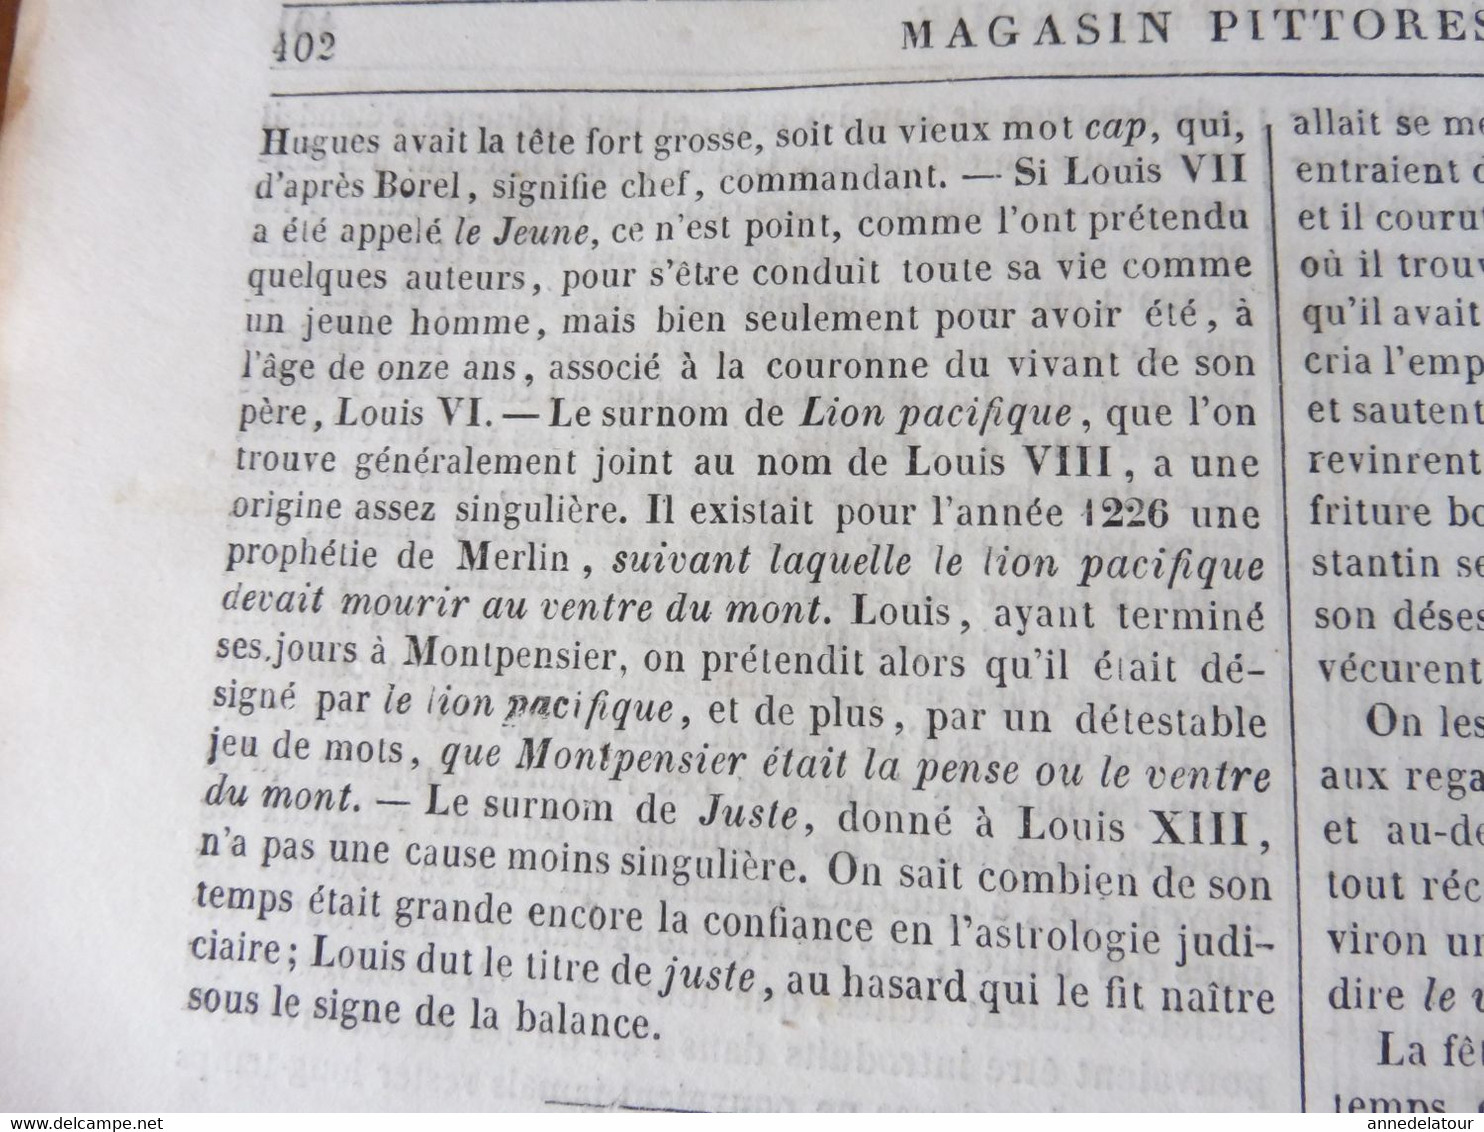 1839 MP Cathédrale de Chartres; Fête de Baloukli ;Goudouli poète du Languedoc; Bataille de Granson; Charles le Téméraire